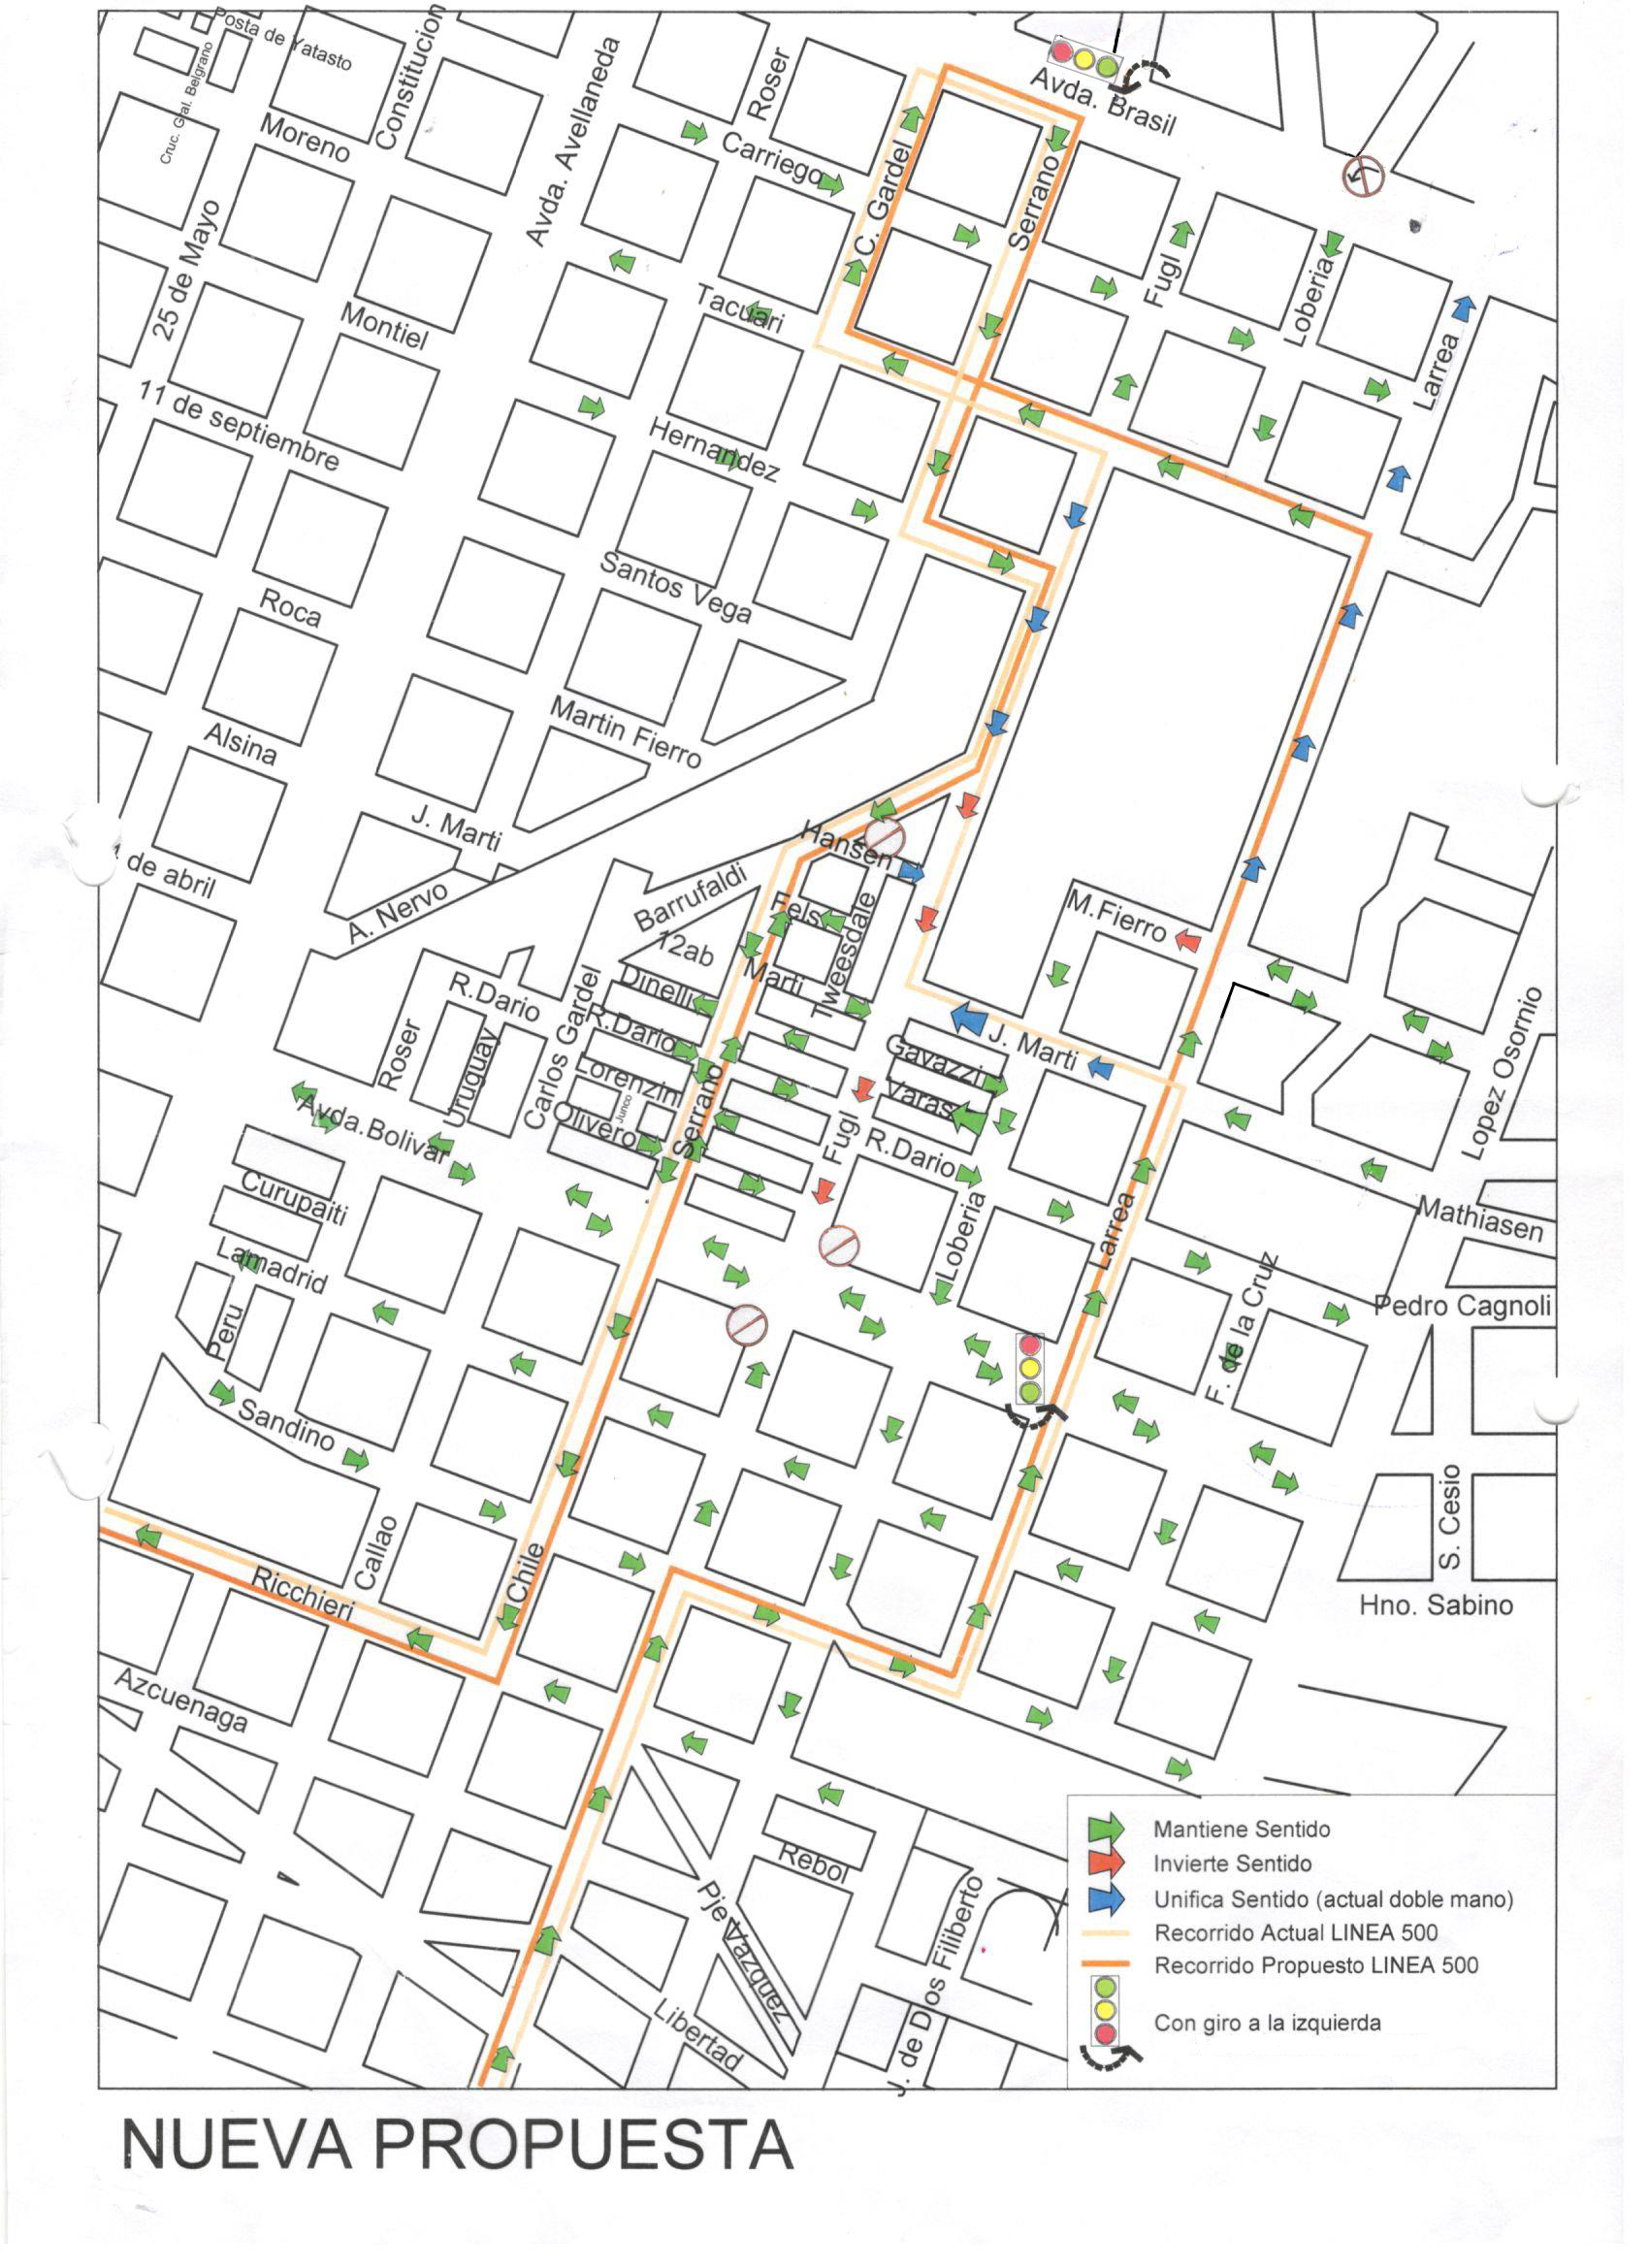 Desde el sábado 4 de agosto se reordenará el tránsito en calles Larrea, Fugl, Martí y Fierro